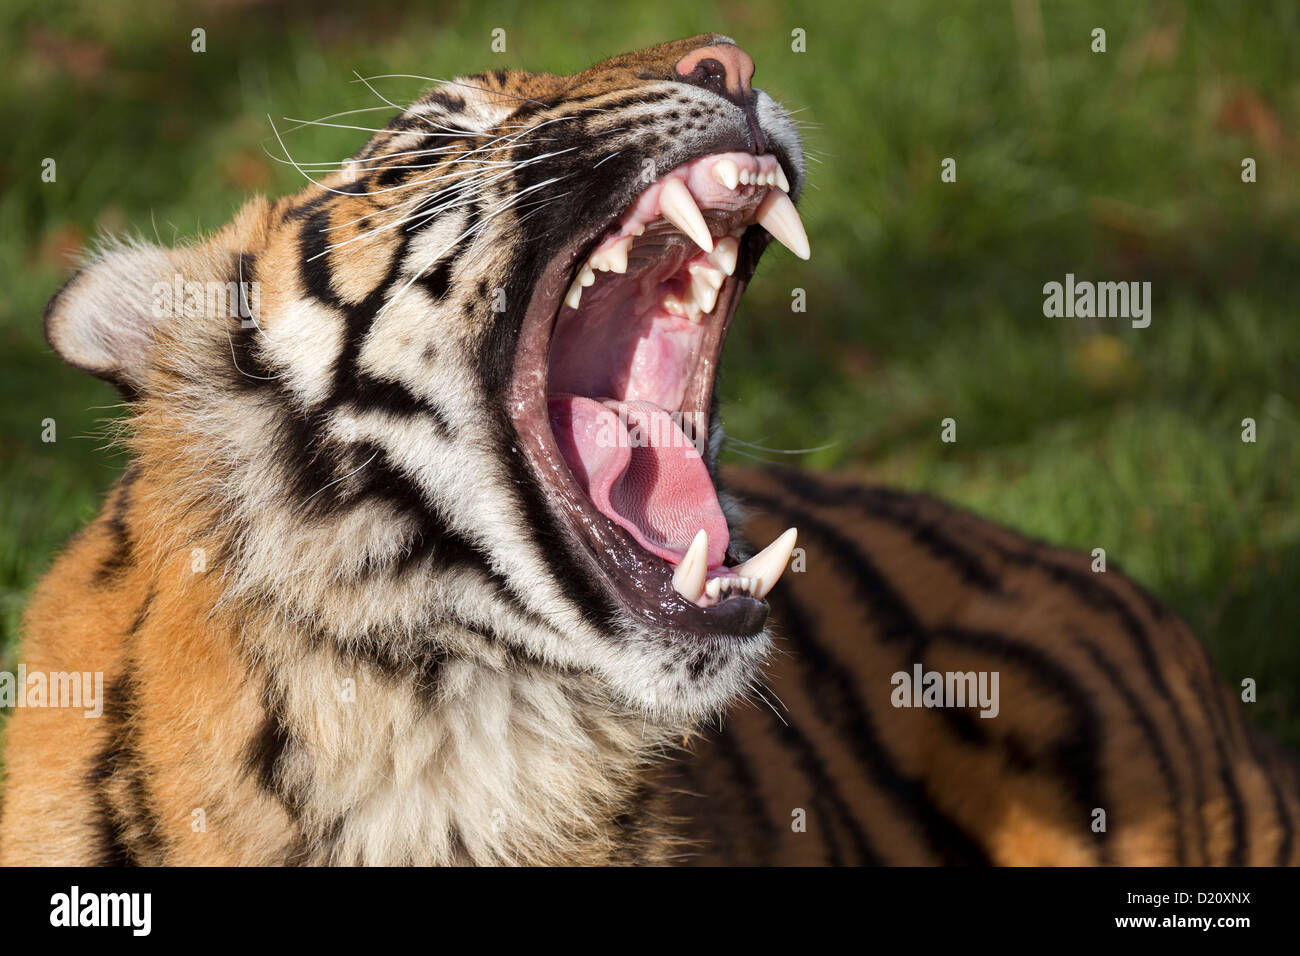 Sumatran Tiger yawning Stock Photo